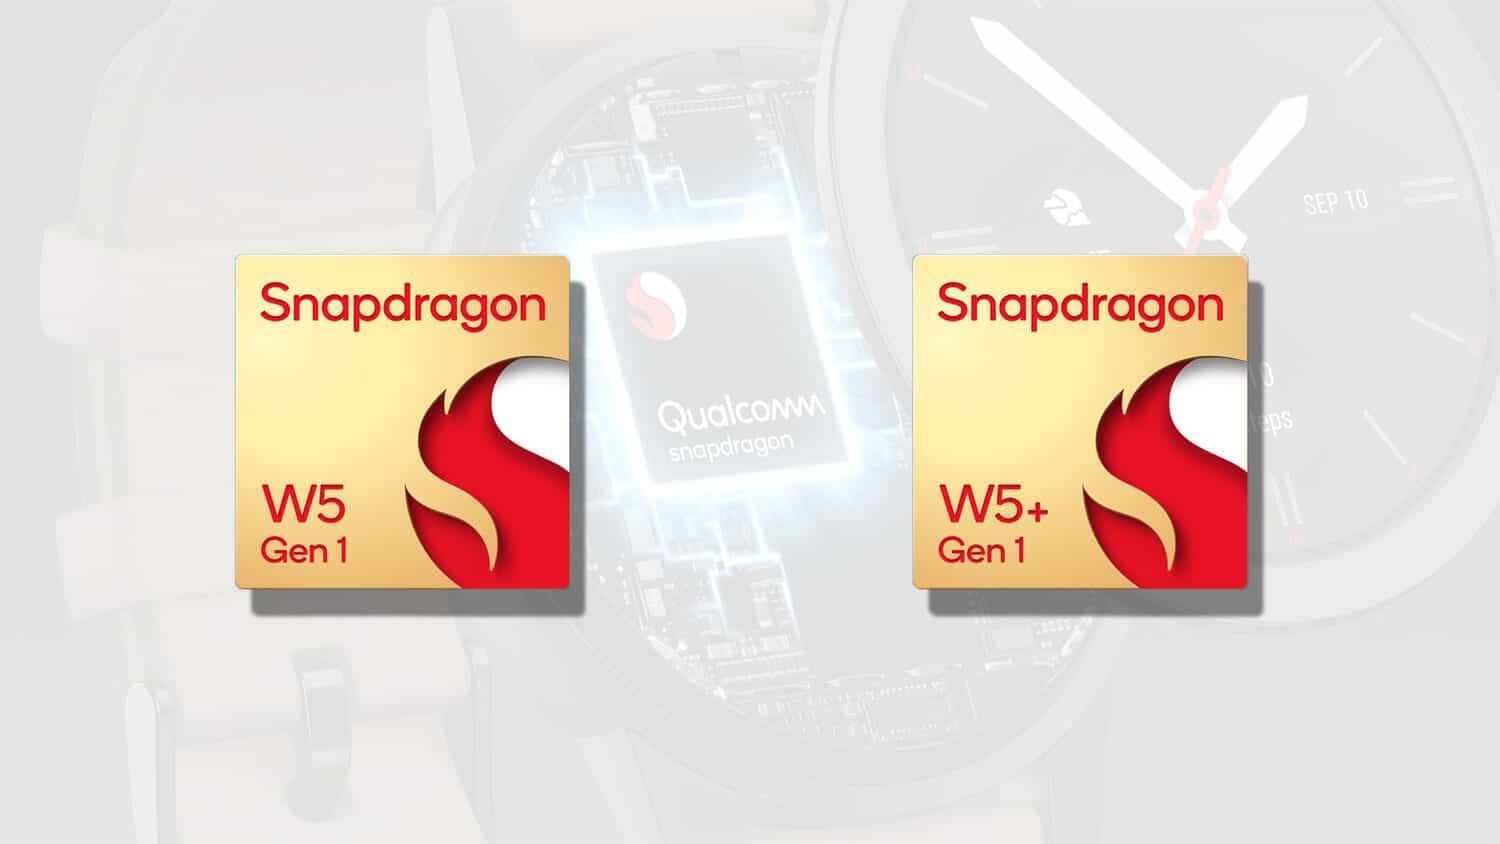 Qualcommが次世代ウェアラブル向けのSnapdragon W5+およびW5プラットフォームを発表